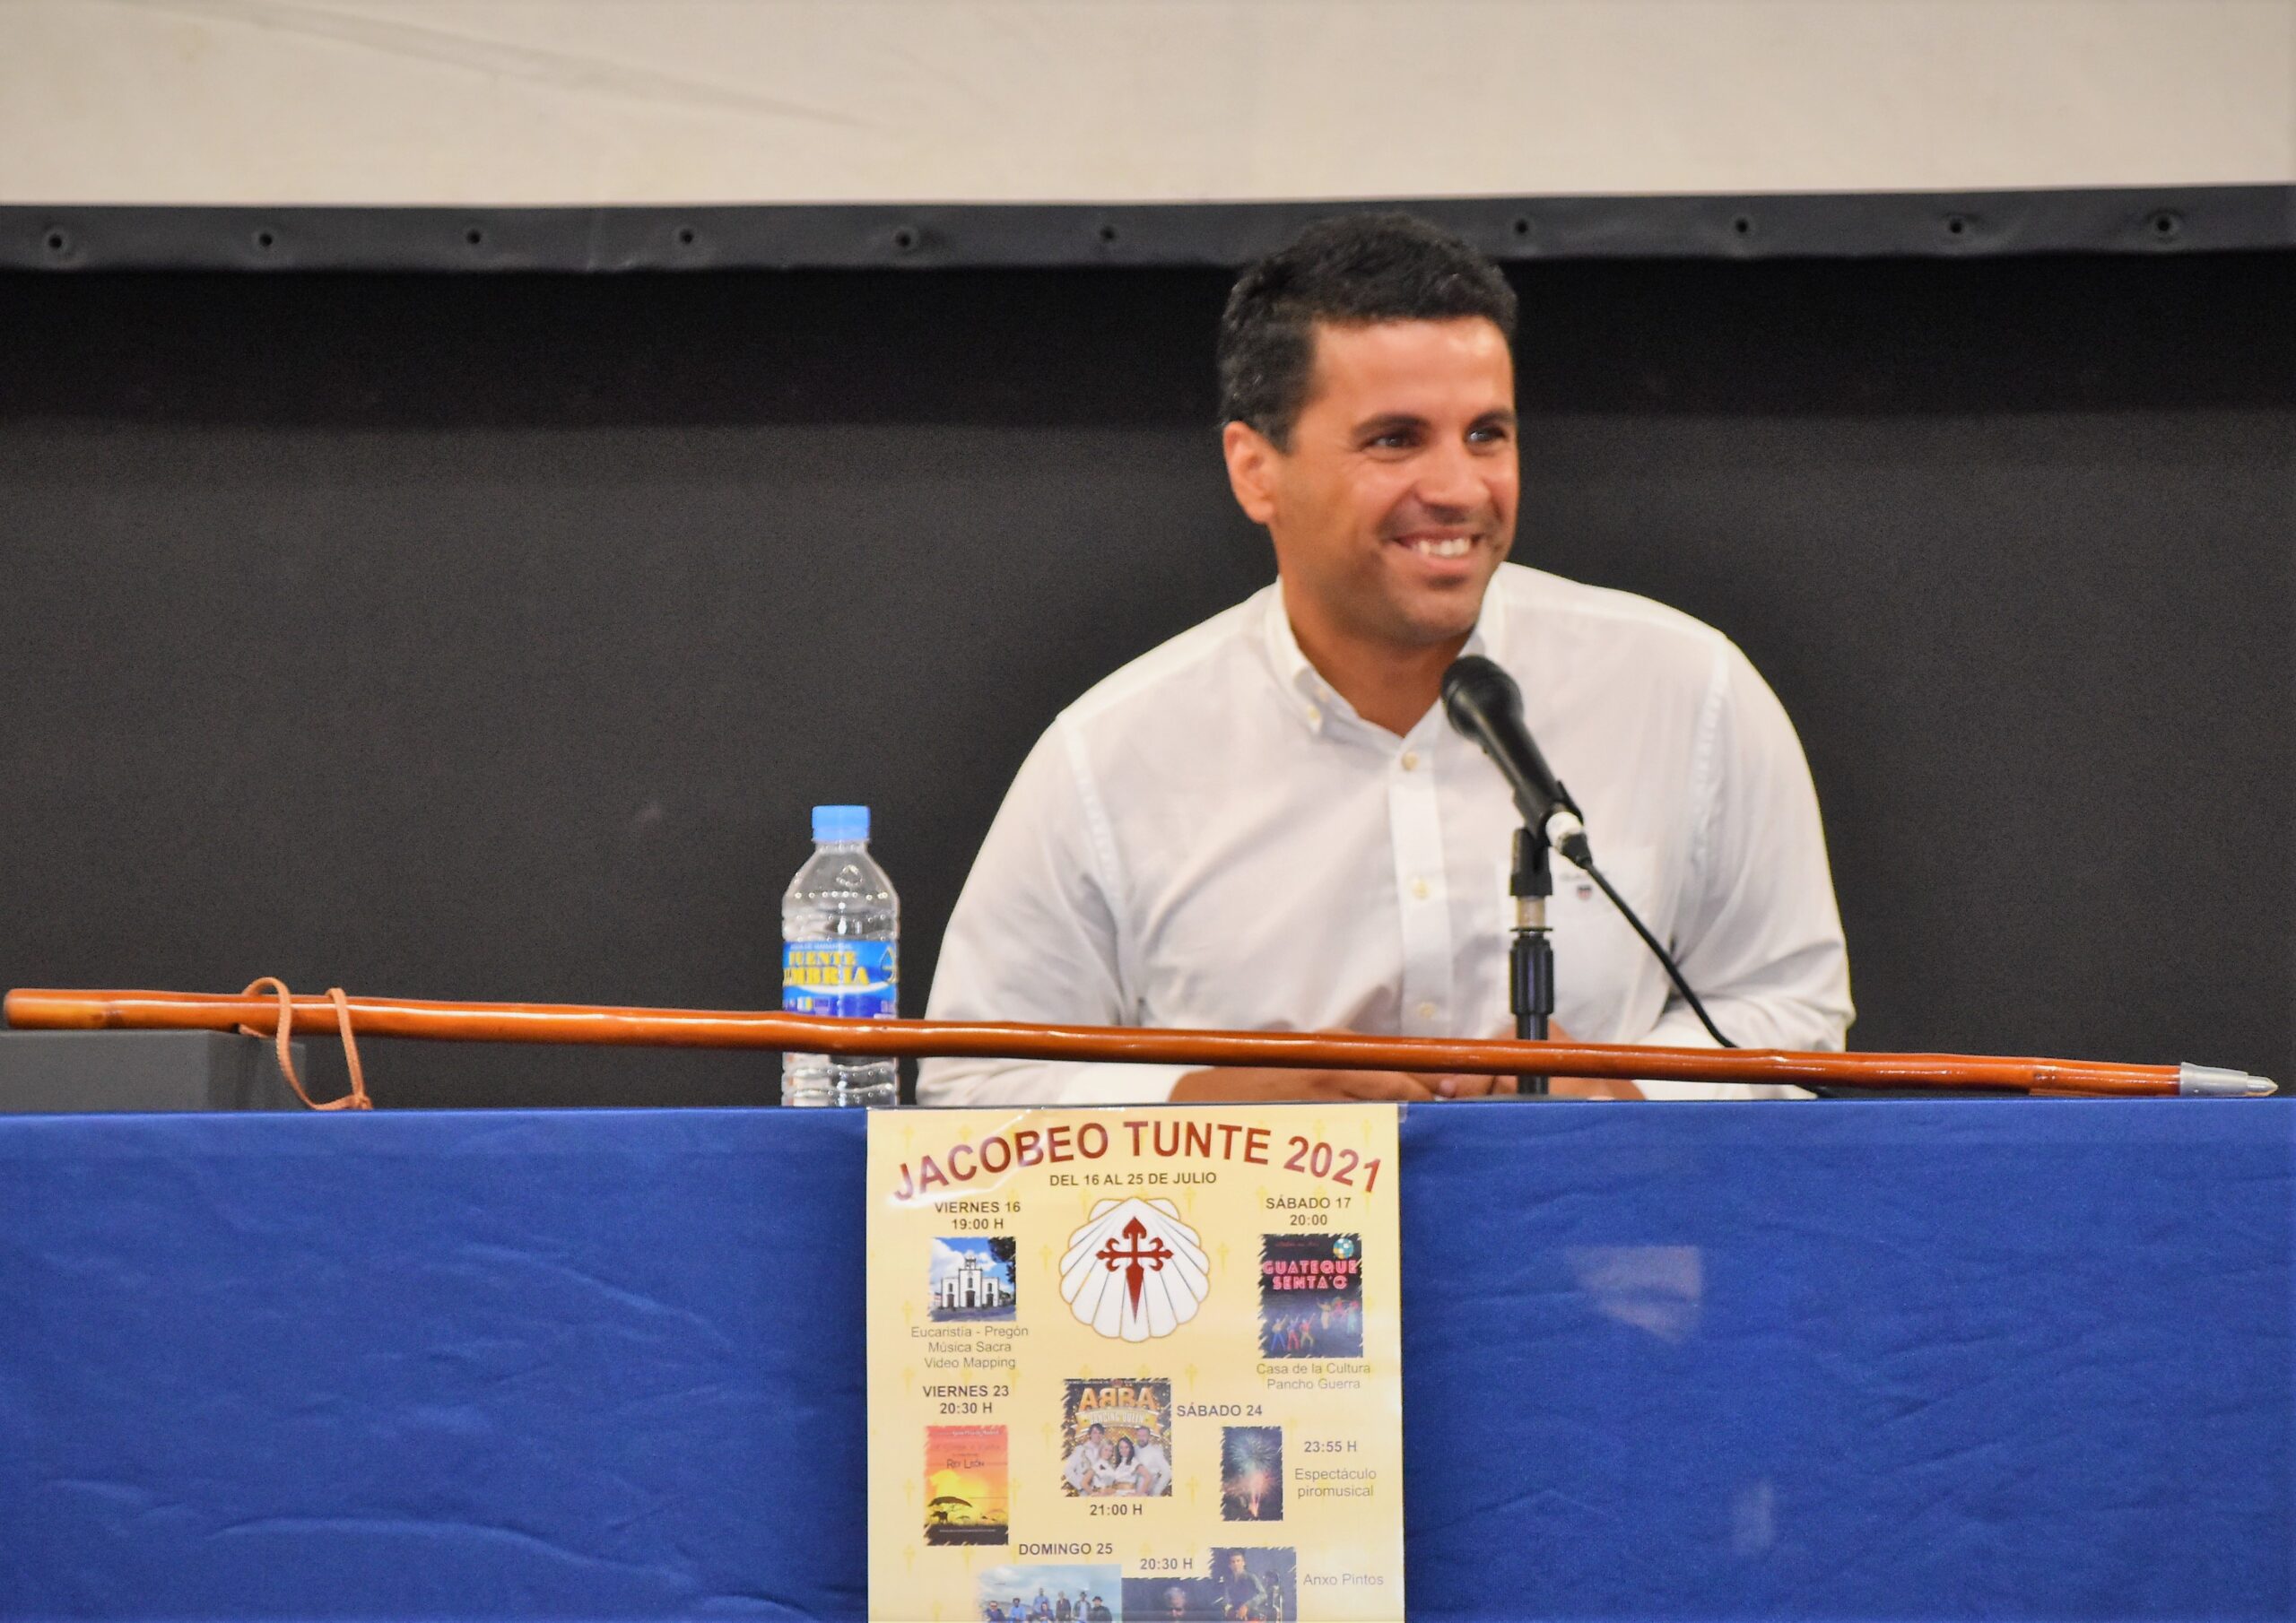 Samuel Henríquez Quintana: Empieza a dar sus frutos el trabajo que llevamos realizando desde hace 2 años en San Bartolomé de Tirajana